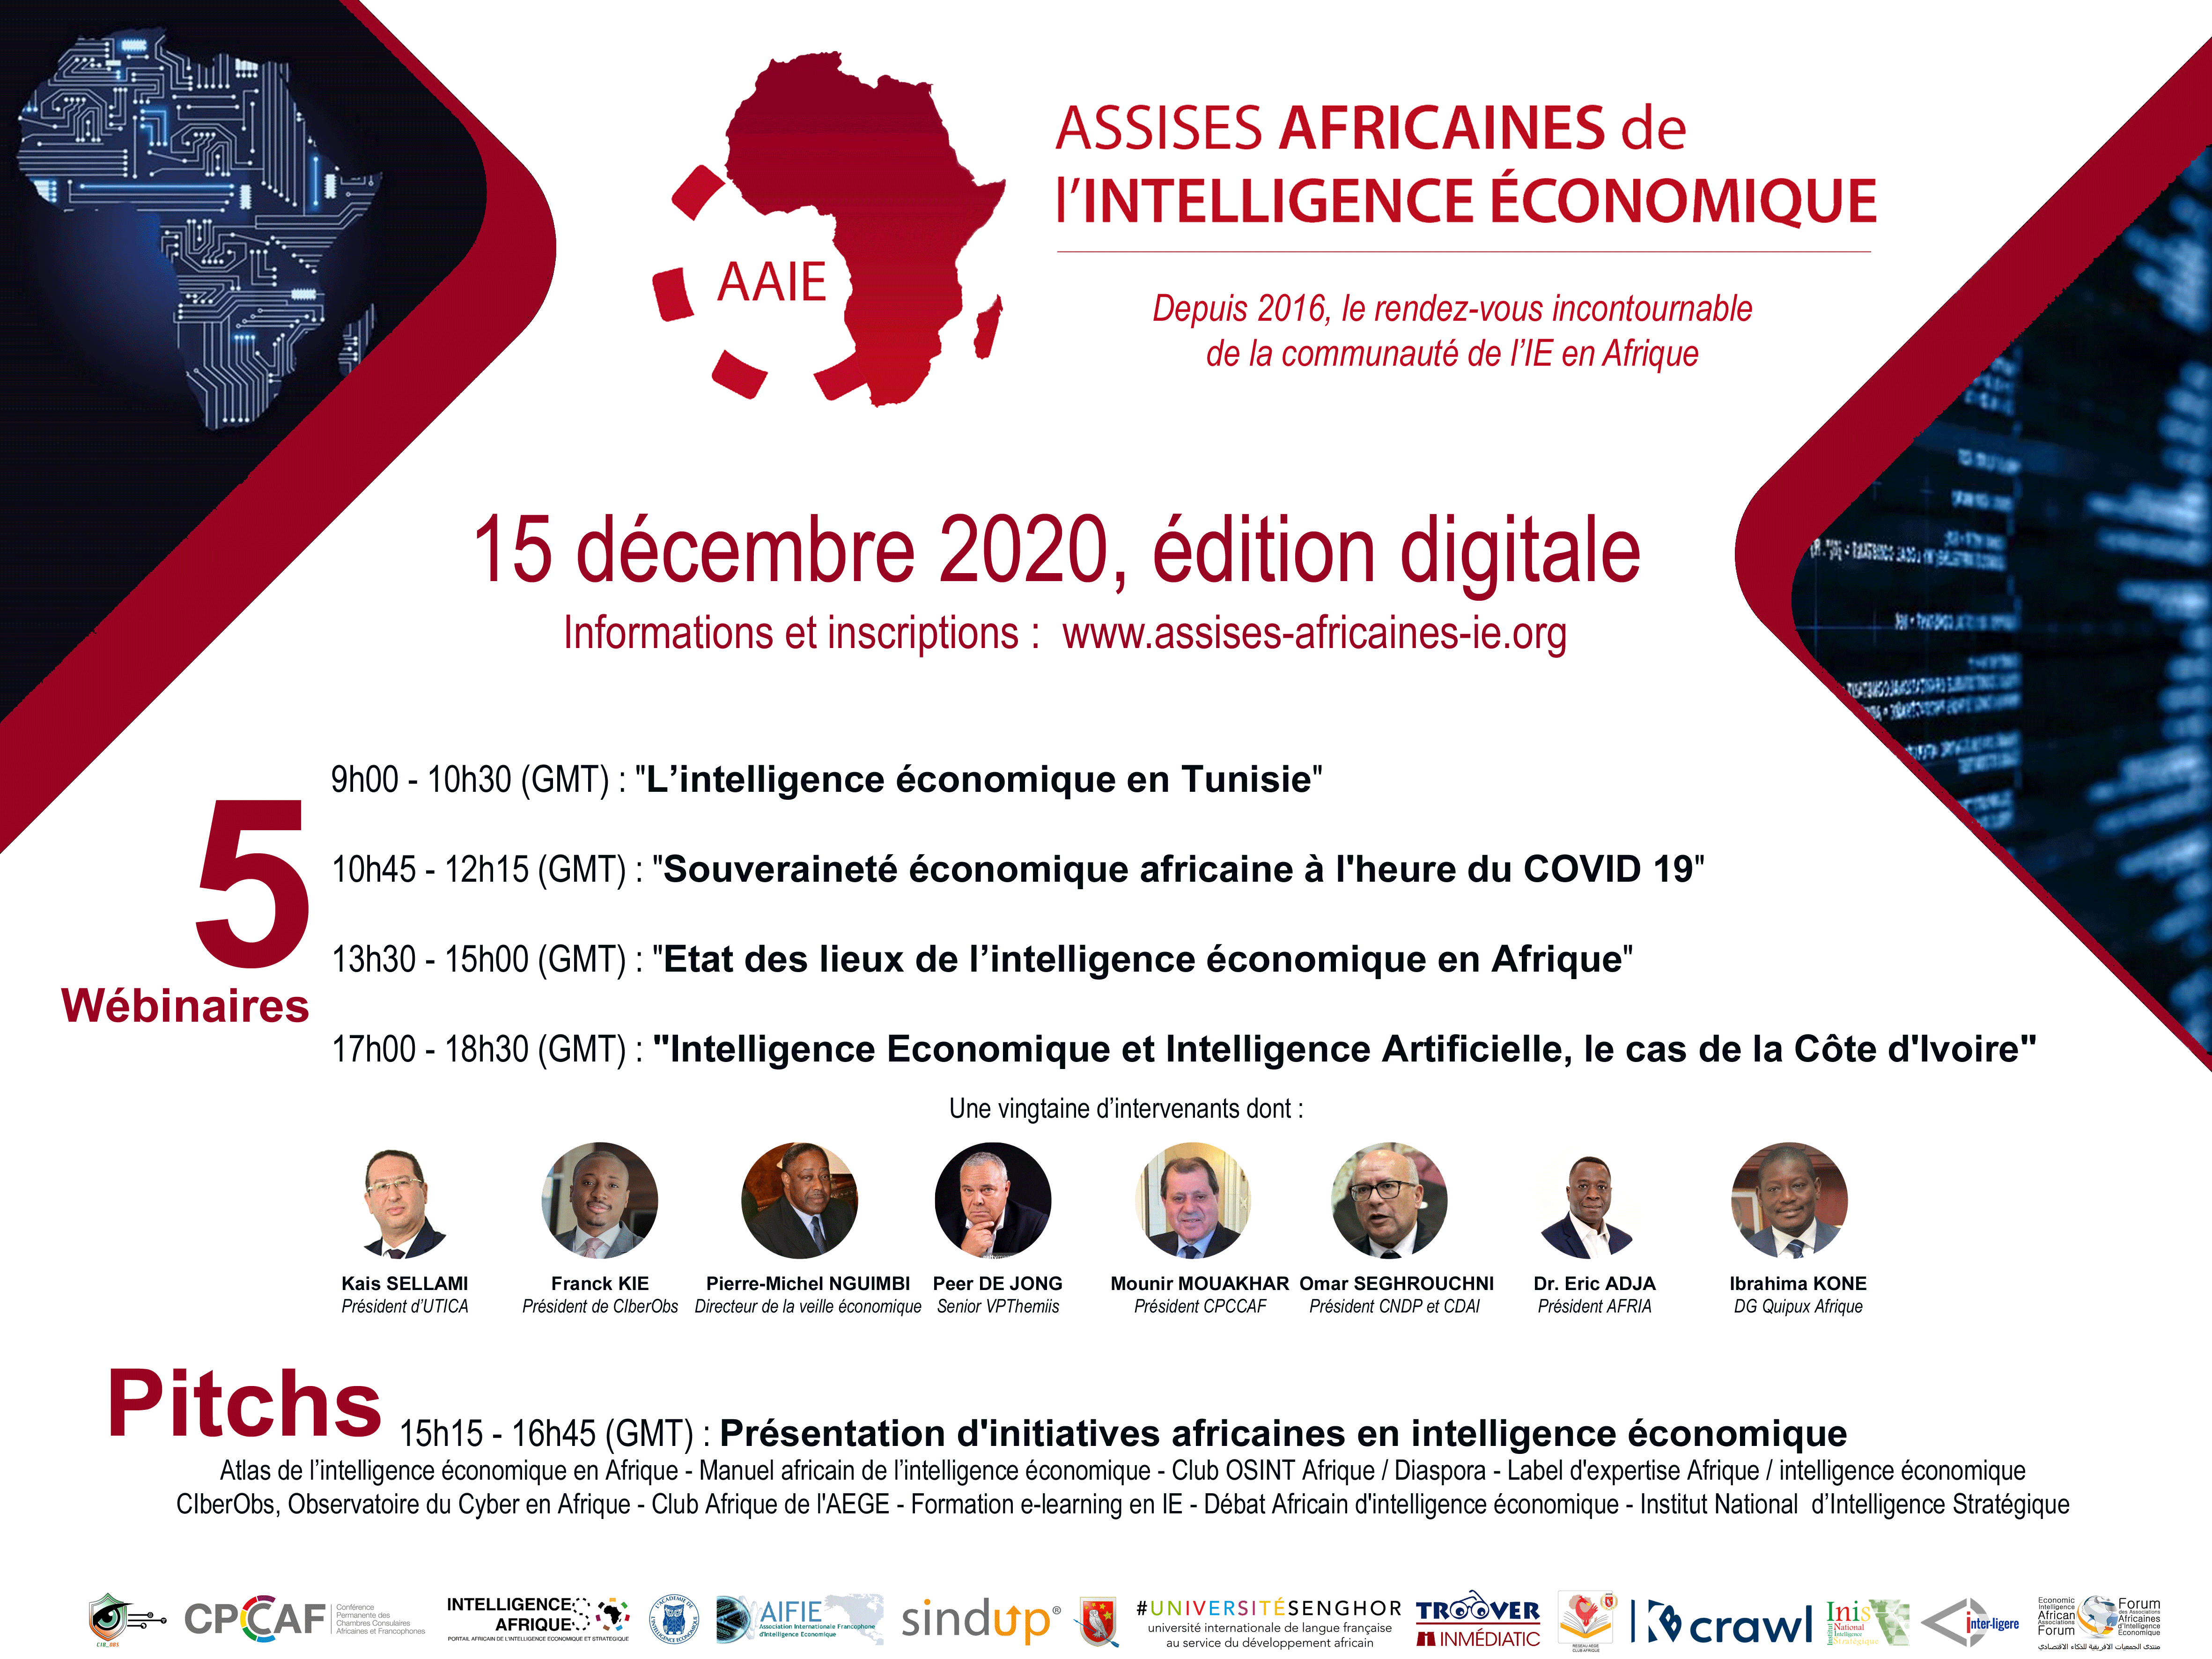 Assises Africaines de l'Intelligence Économique. 15 decembre 2020